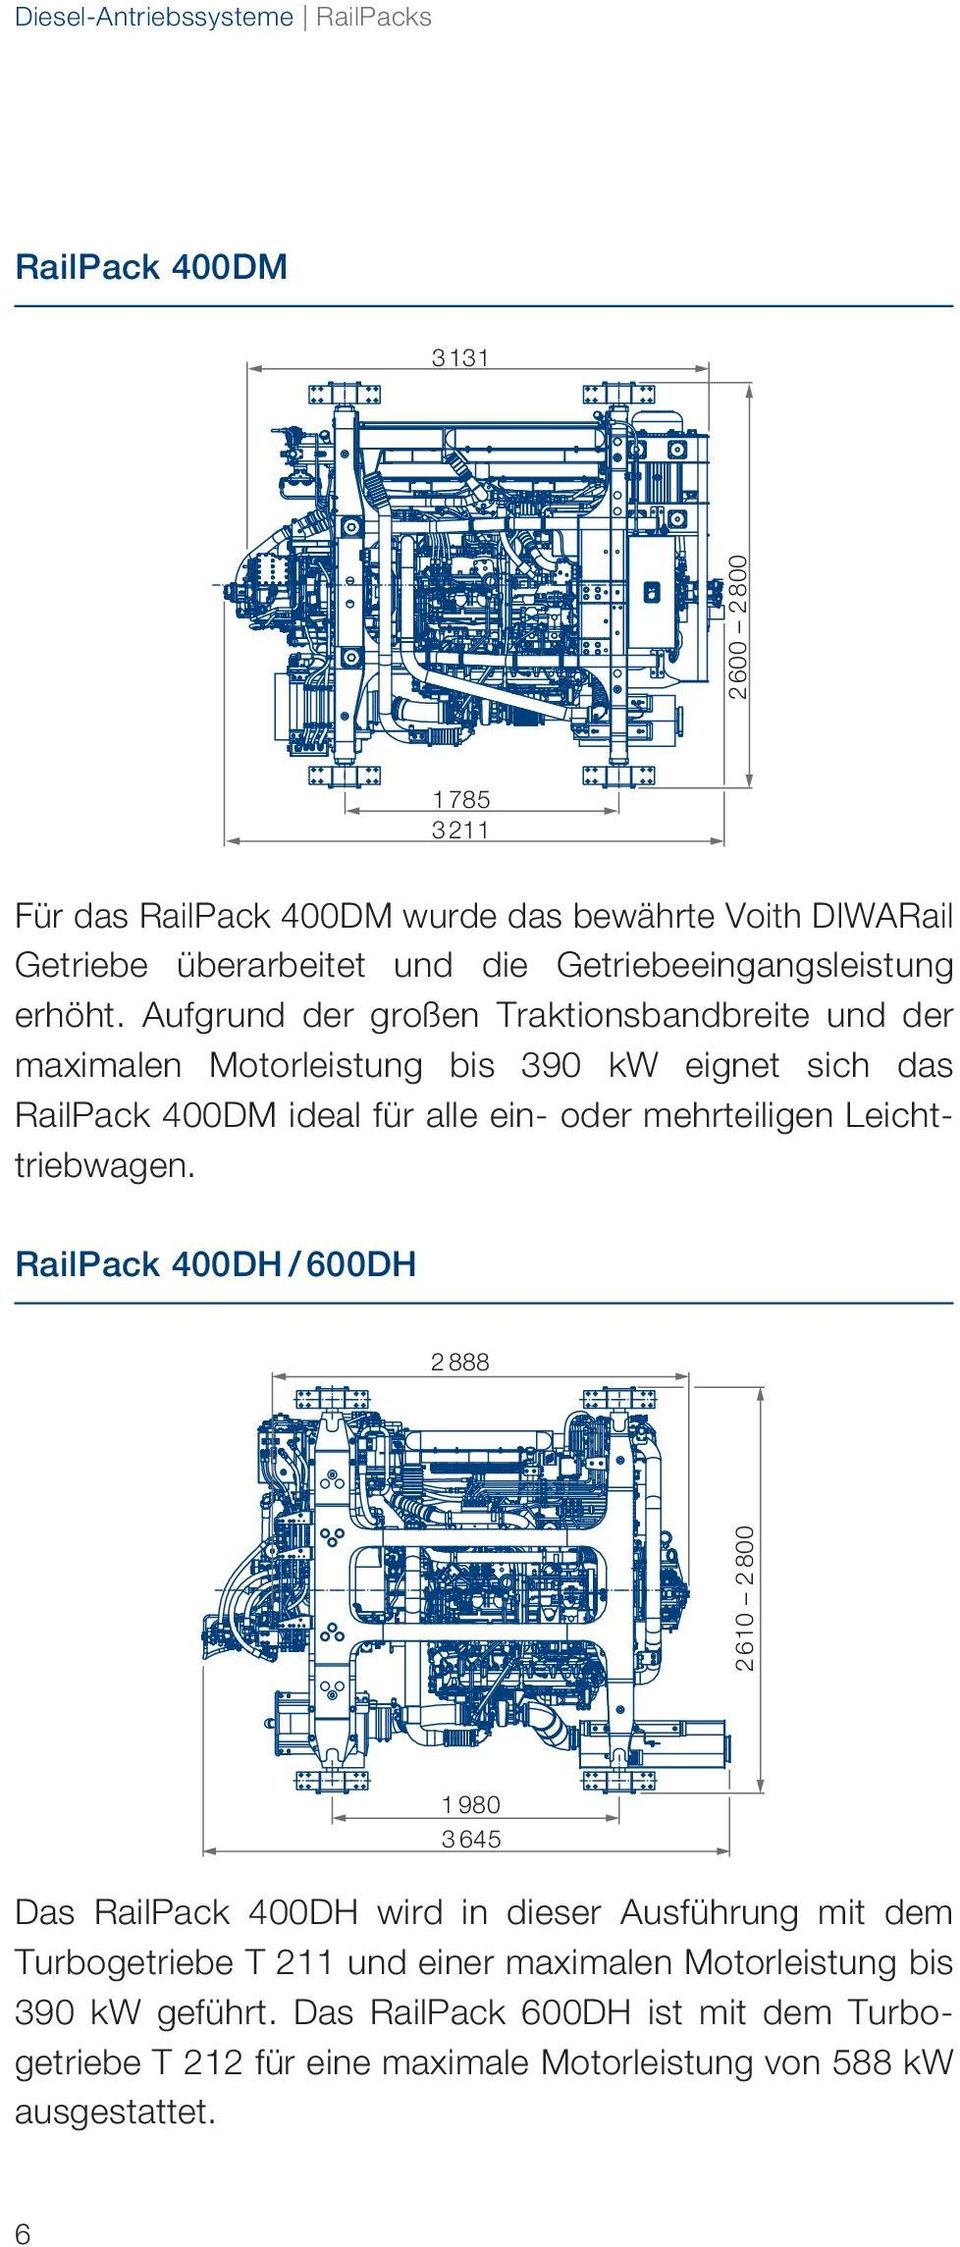 Aufgrund der großen Traktionsbandbreite und der maximalen Motorleistung bis 390 kw eignet sich das RailPack 400DM ideal für alle ein- oder mehrteiligen